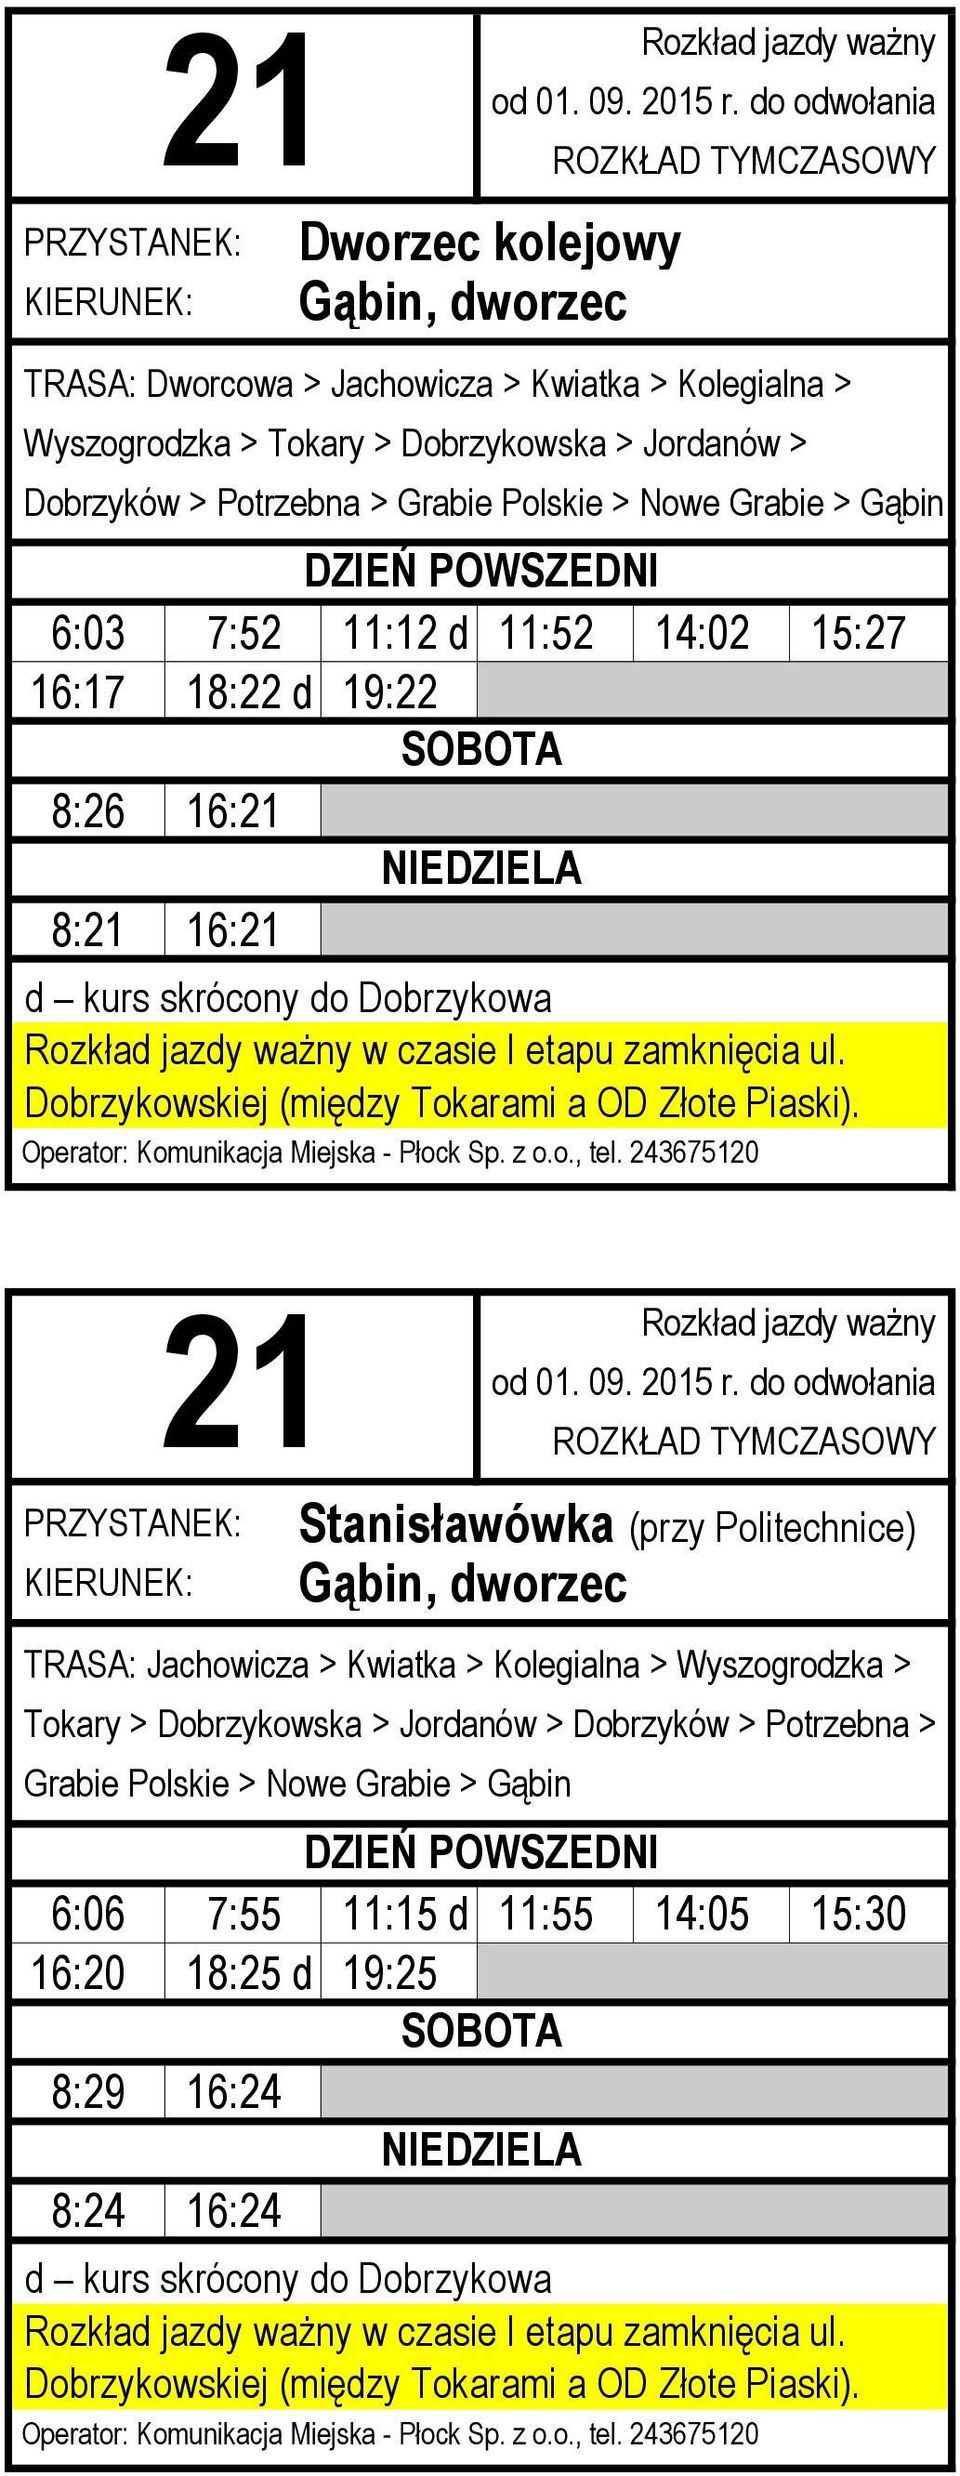 16: Stanisławówka (przy Politechnice) TRASA: Jachowicza > Kwiatka > Kolegialna > Wyszogrodzka > Tokary > Dobrzykowska > Jordanów